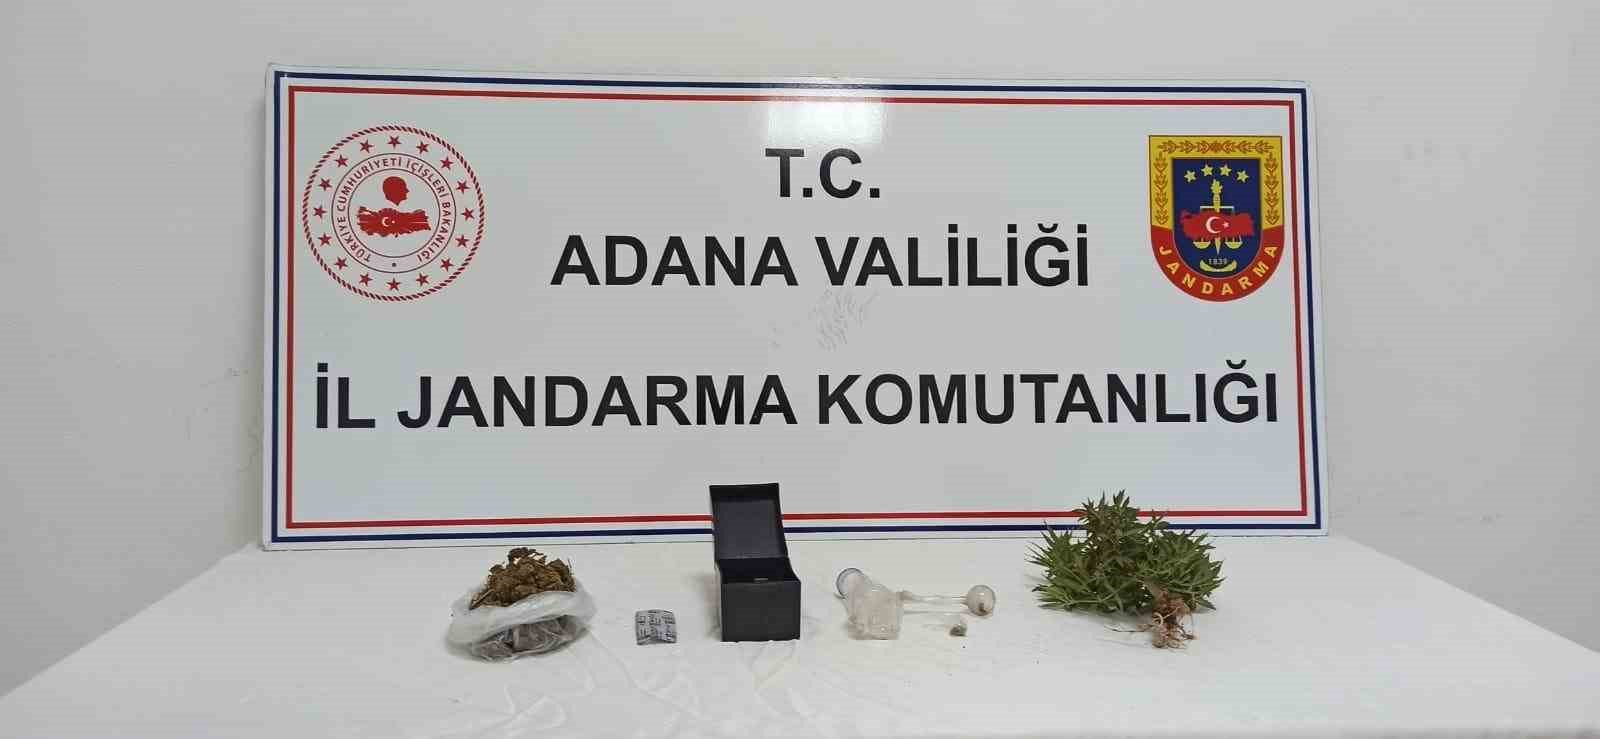 Adana’da uyuşturucu ile mücadele